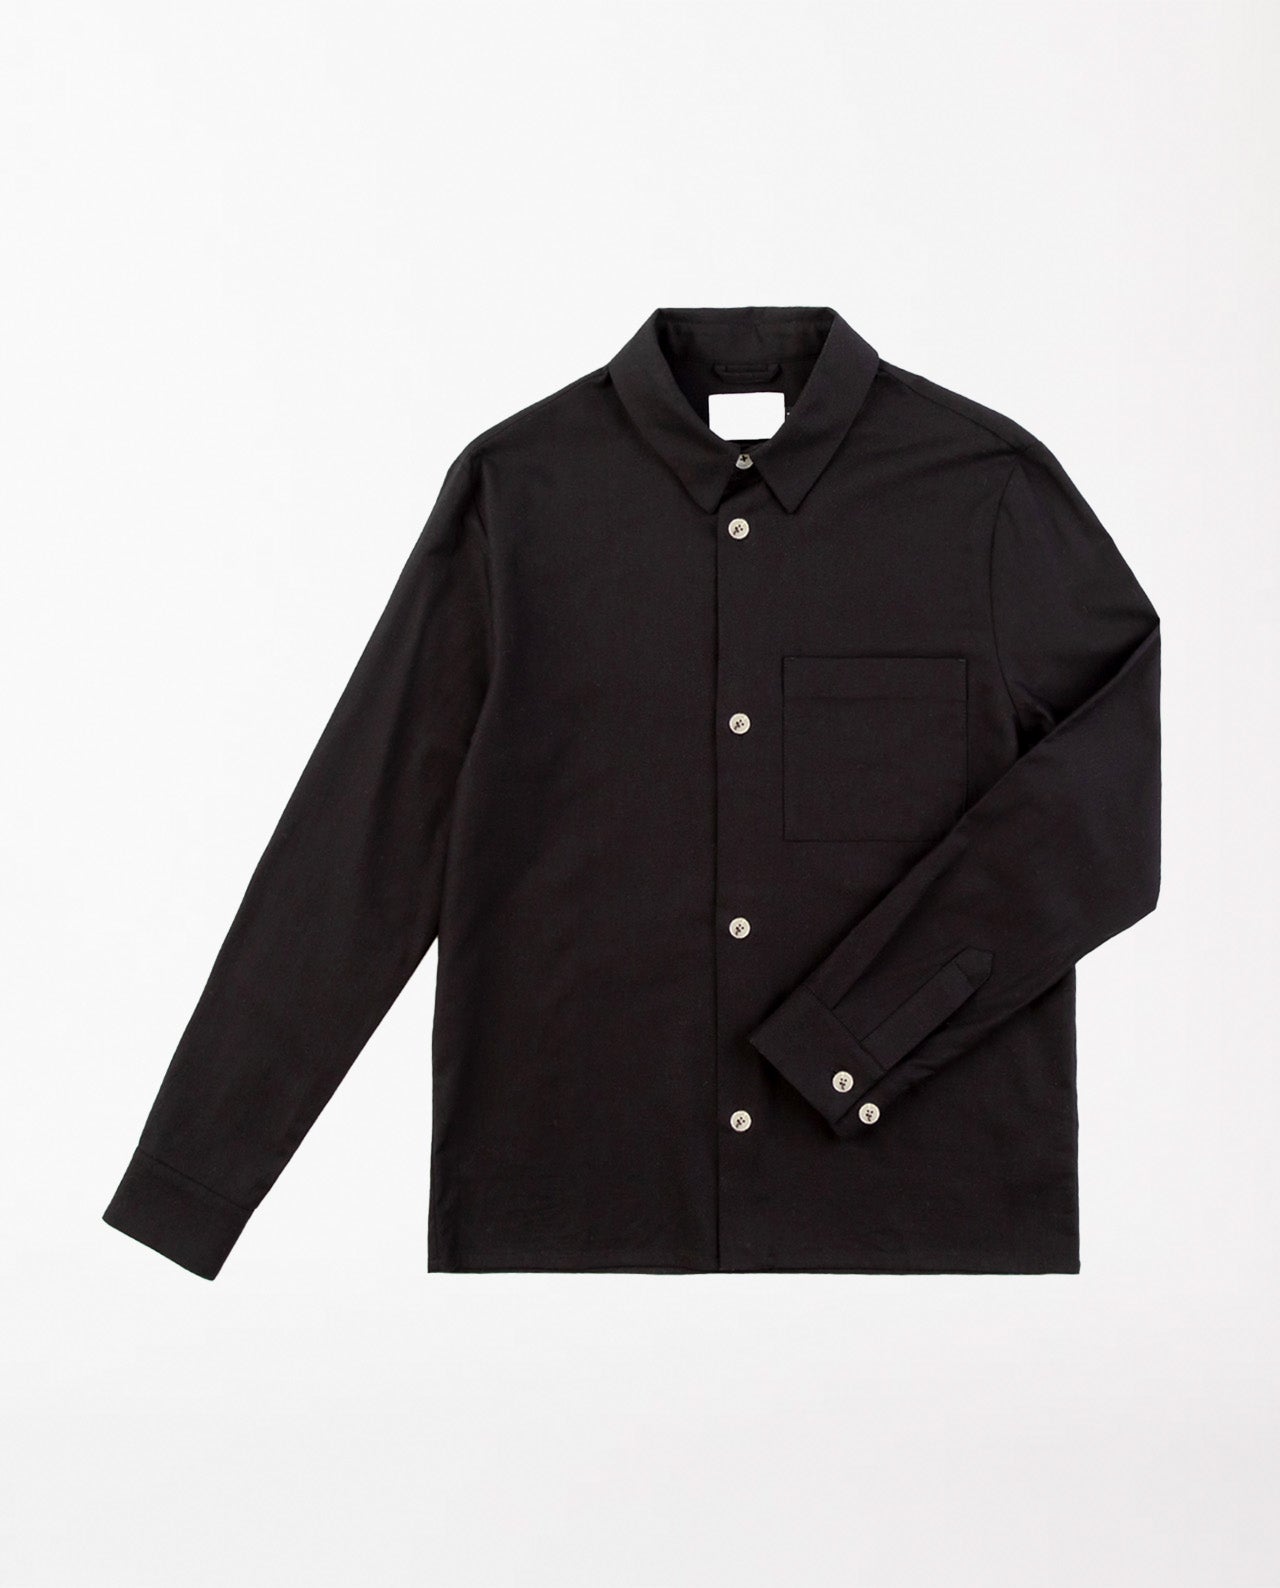 marché commun rotholz chemise droite homme coton biologique noire éthique